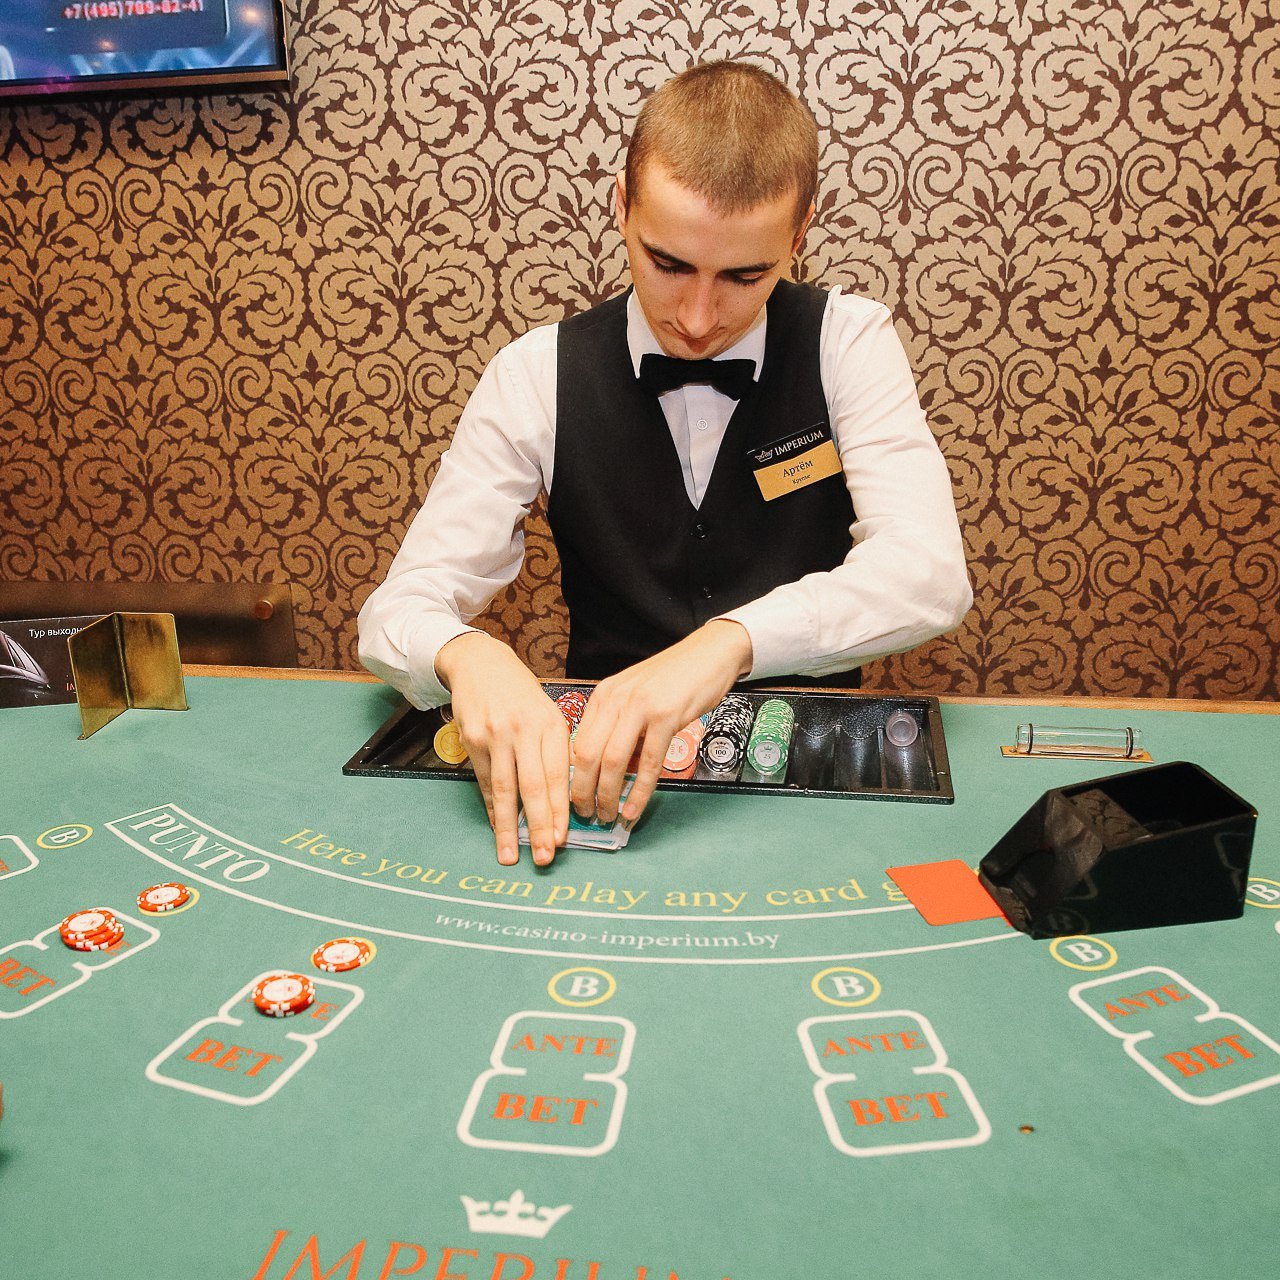 Вакансии в казино казахстан скачать игру бесплатно в игровые аппараты клубничка